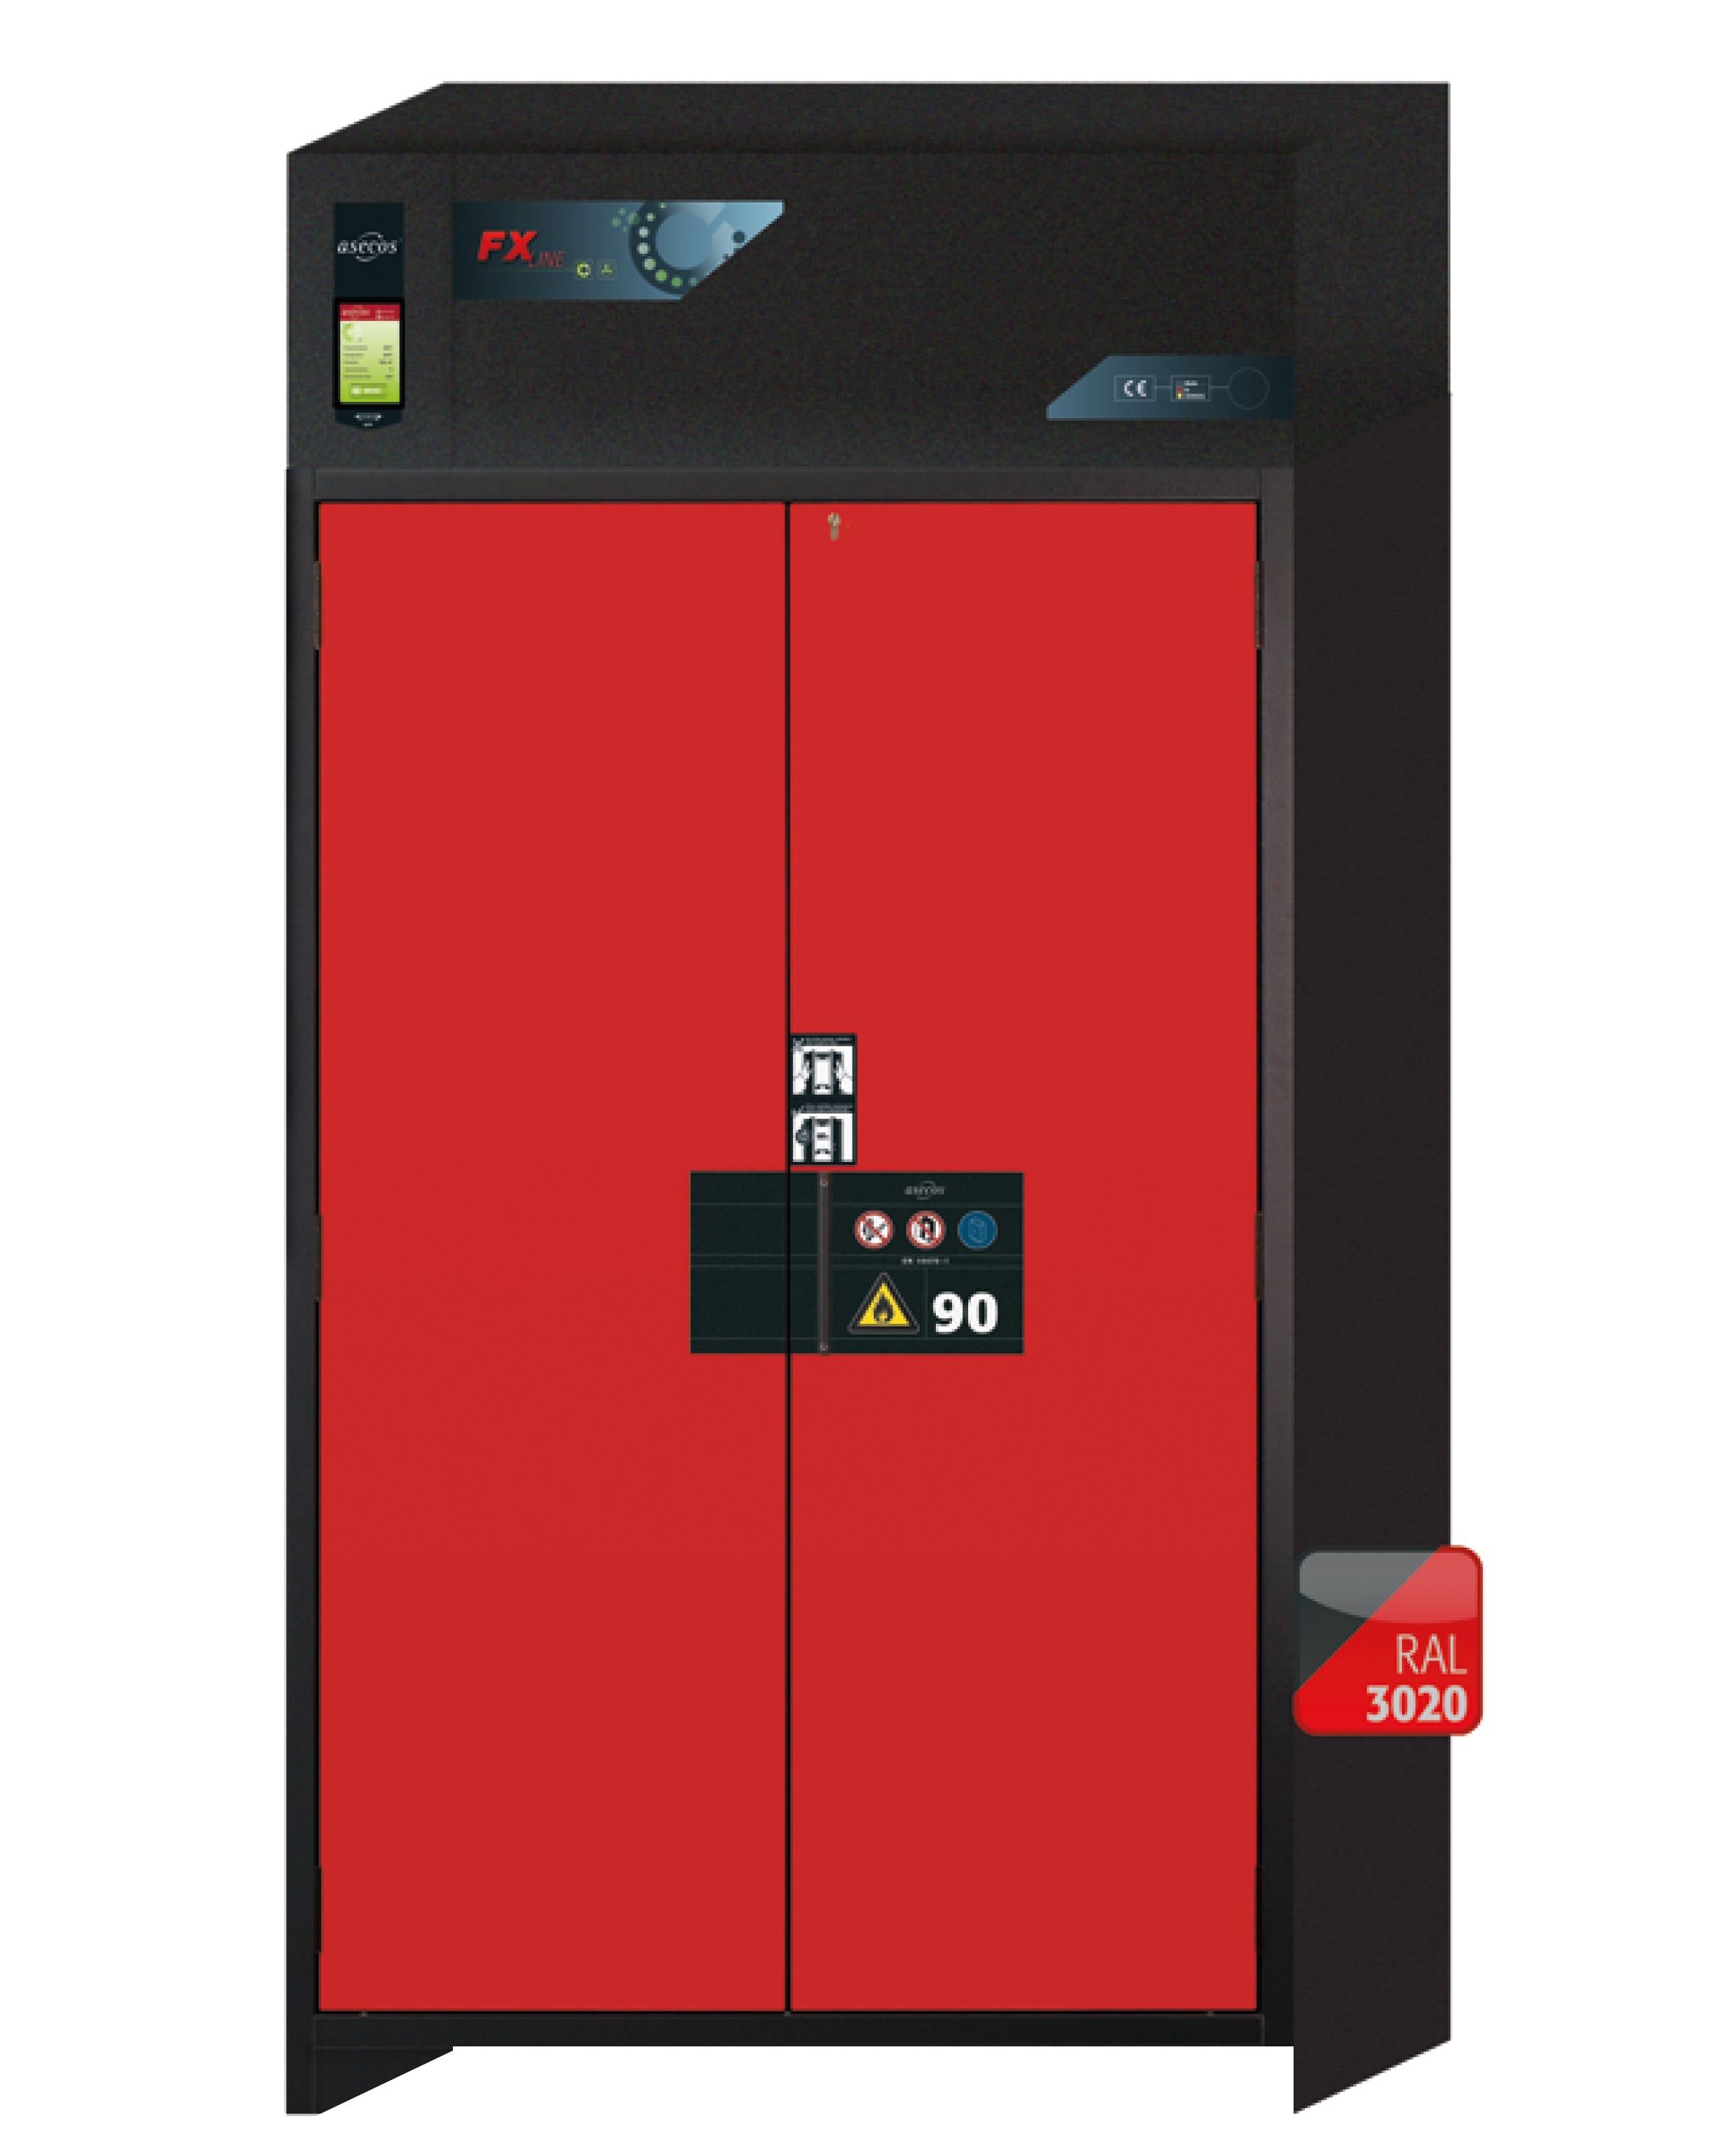 Armoire de filtration d'air recyclé type 90 FX-PEGASUS-90 modèle FX90.229.120.WDAC en rouge signalisation RAL 3020 avec 6 plateaux coulissants standard (acier inoxydable 1.4301)